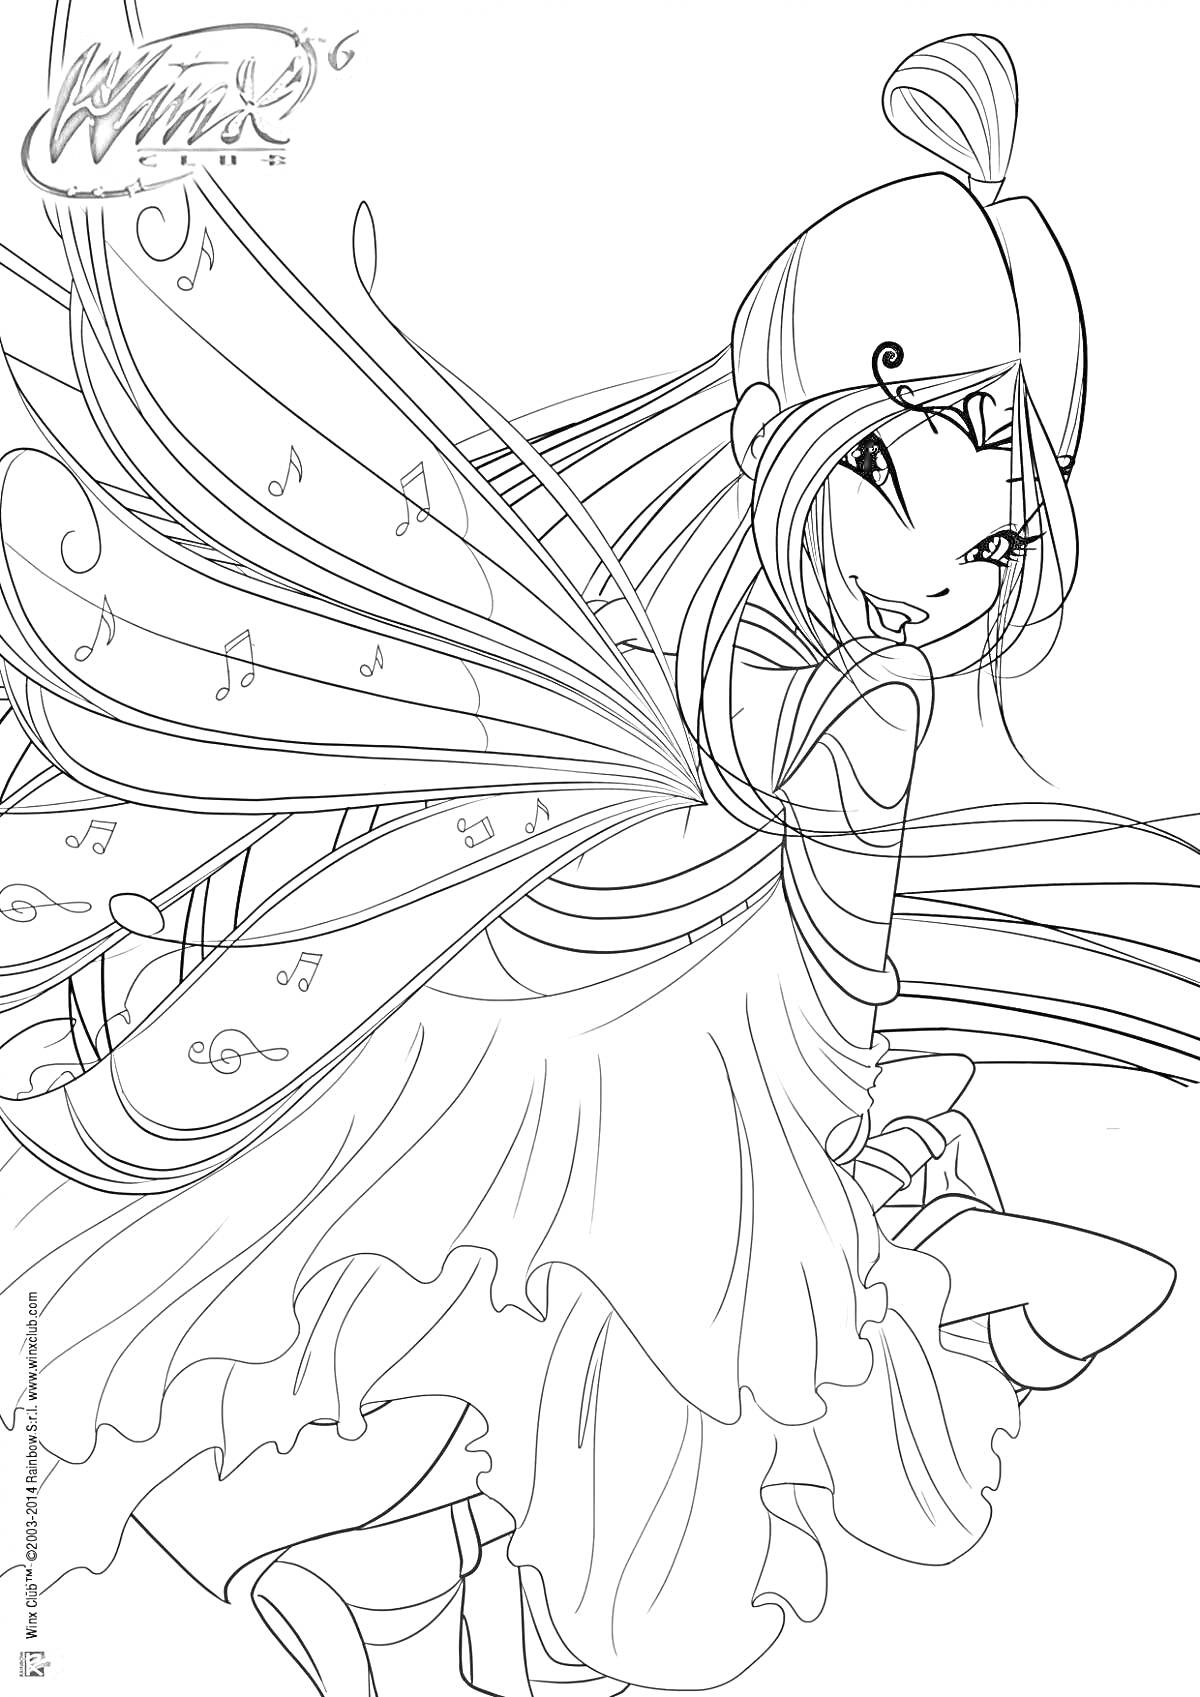 Раскраска Муза из Винкс с крыльями, украшенными музыкальными нотами, в платье со складками